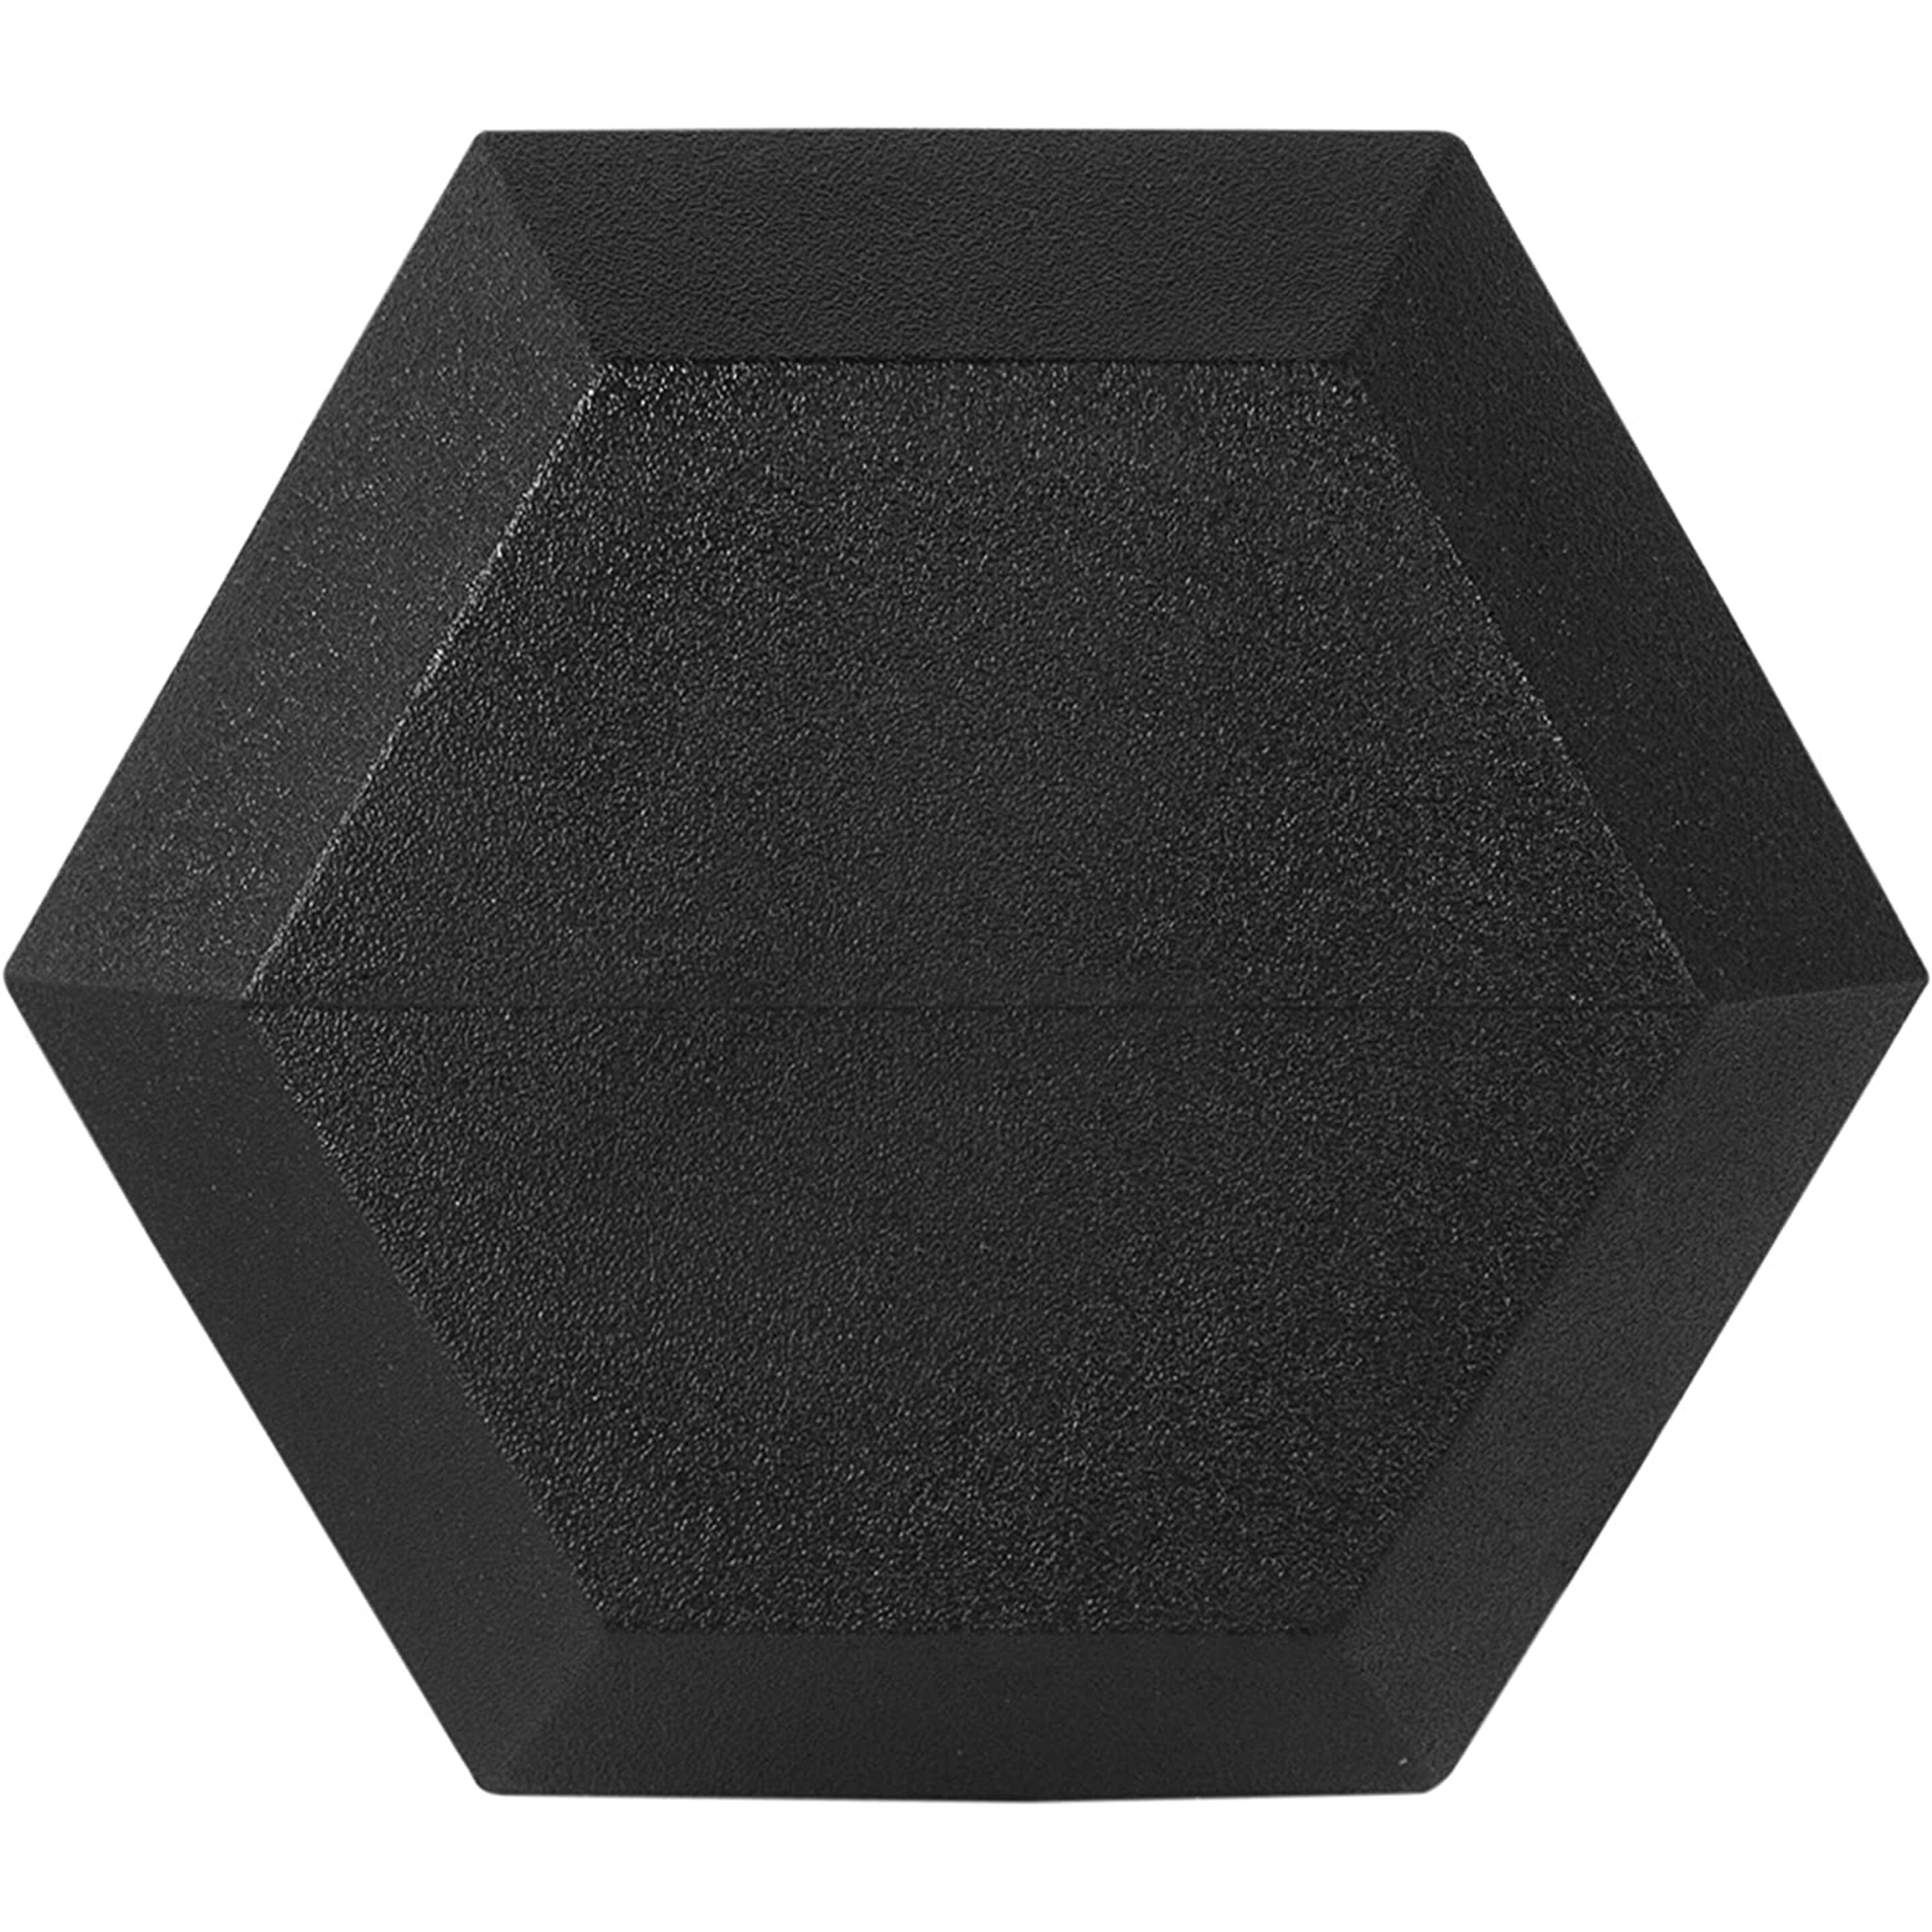 Mancuernas Hexagonales 1kg (Par) Ozio Fitness Musculación - Negro  MKP